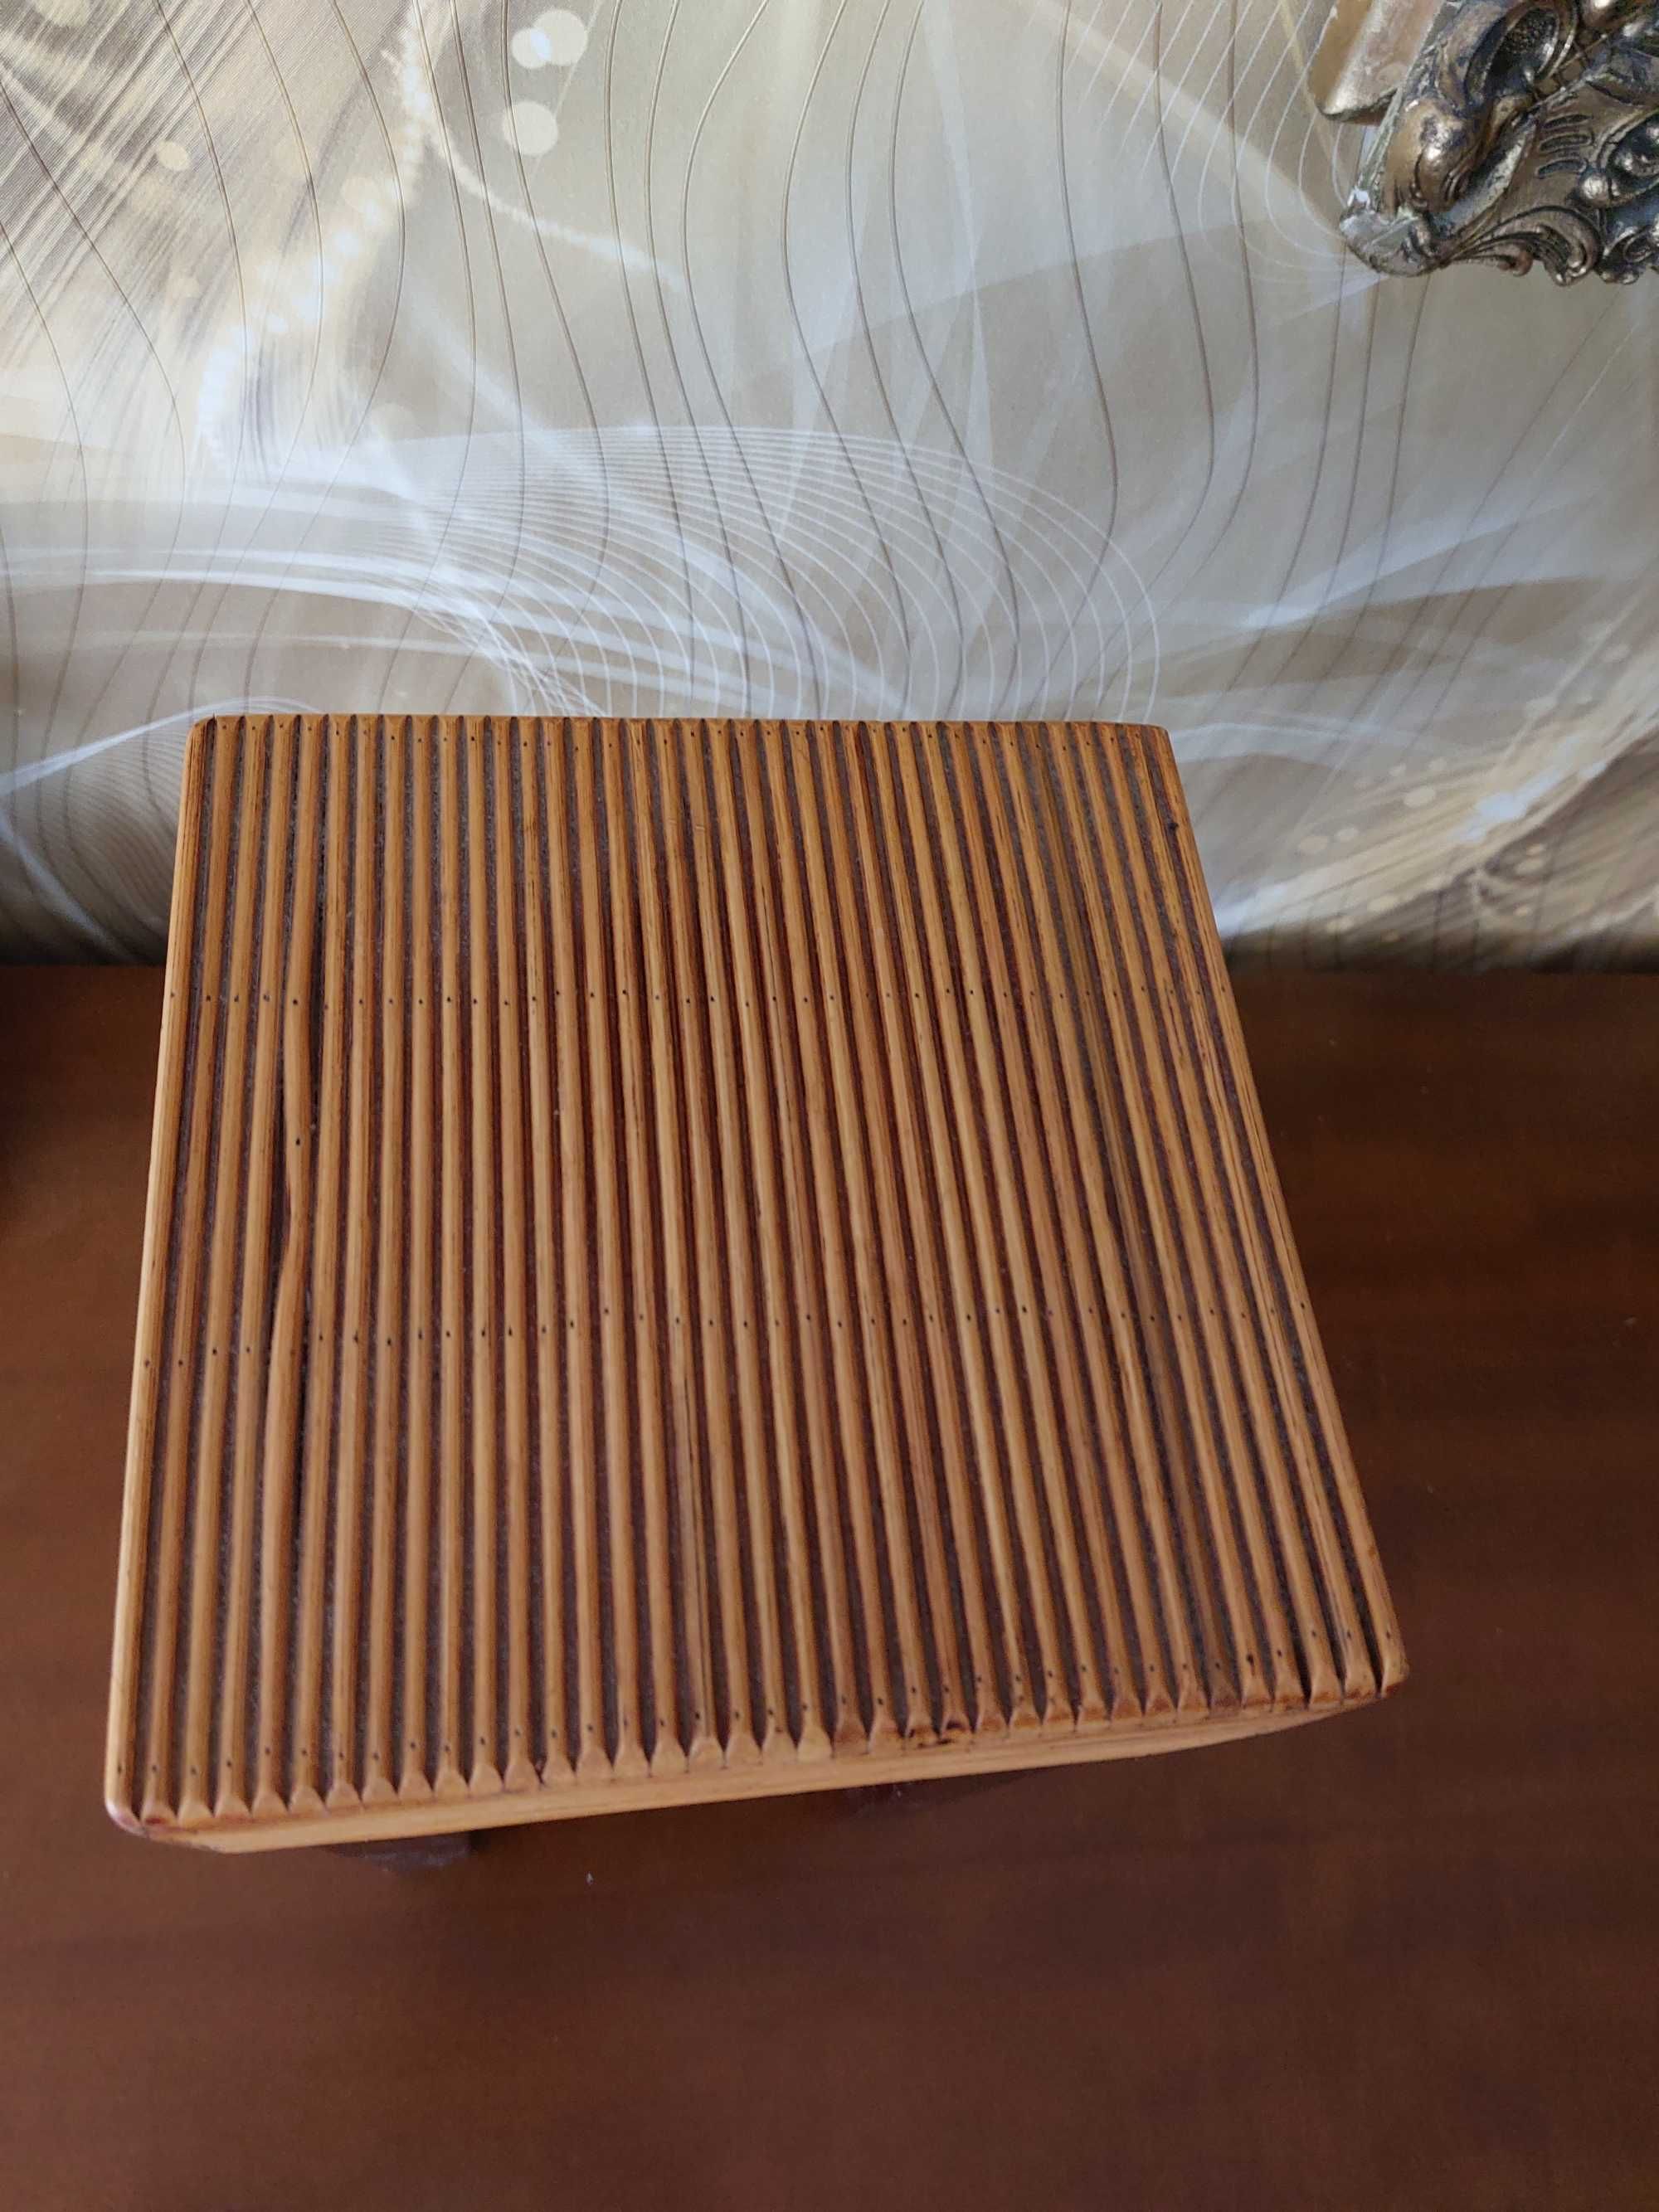 Taborecik stołek drewniany dla kolekcjonerów